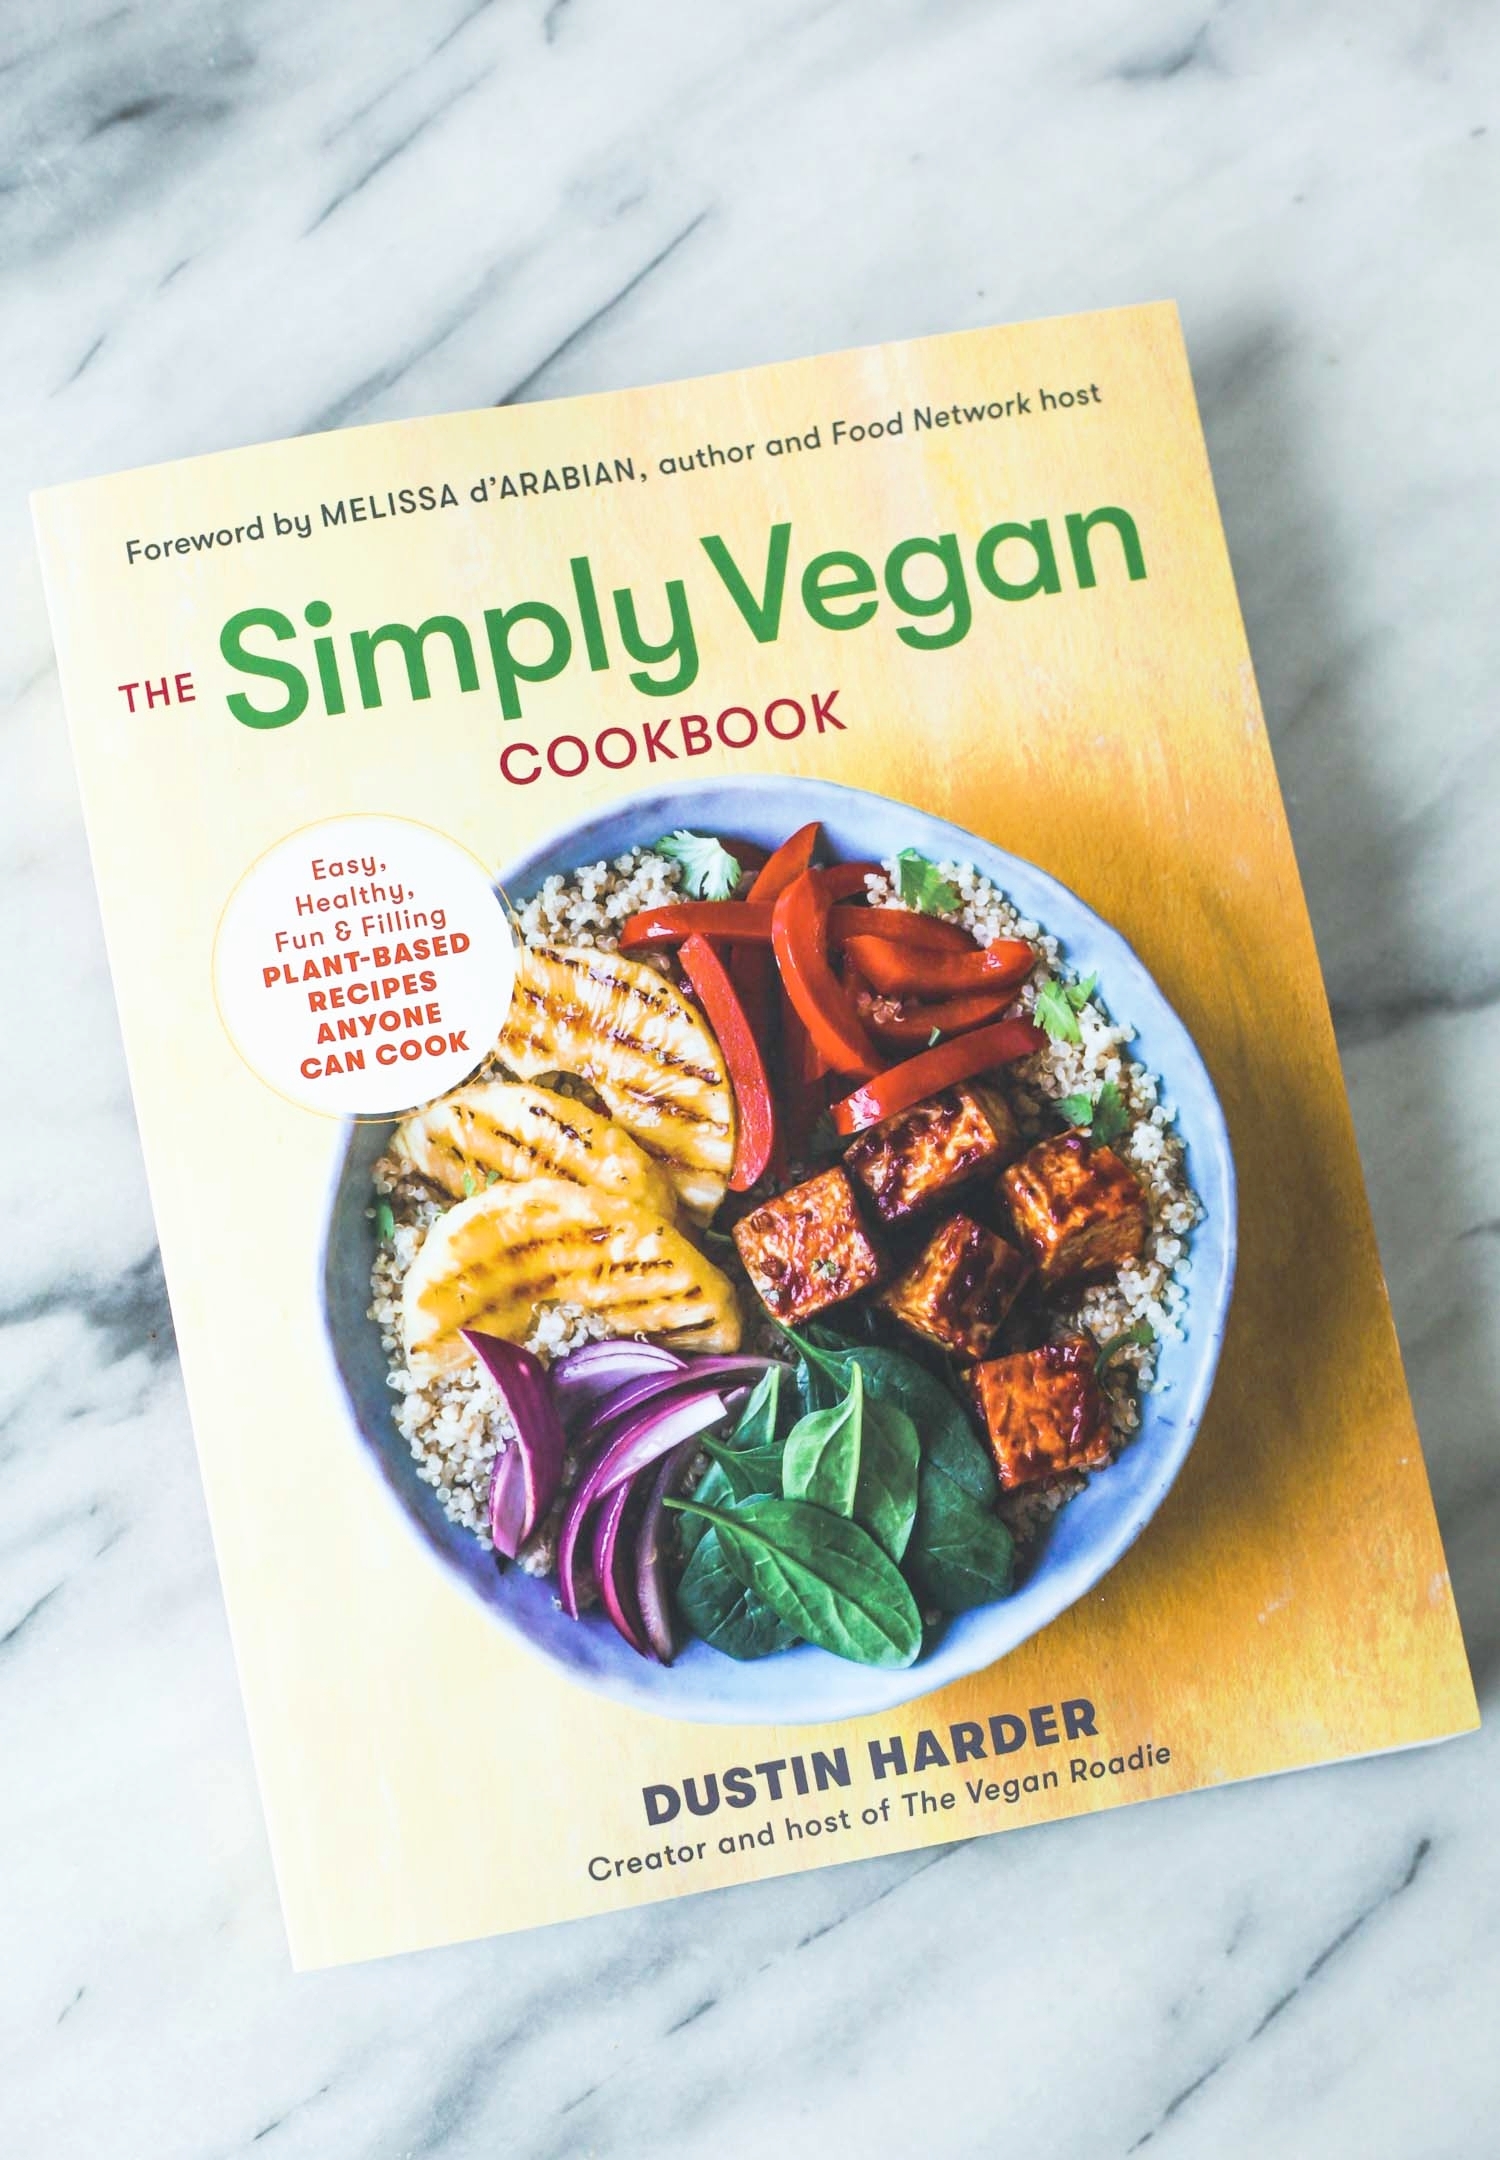 The Simply Vegan Cookbook by Dustin Harder, aka The Vegan Roadie